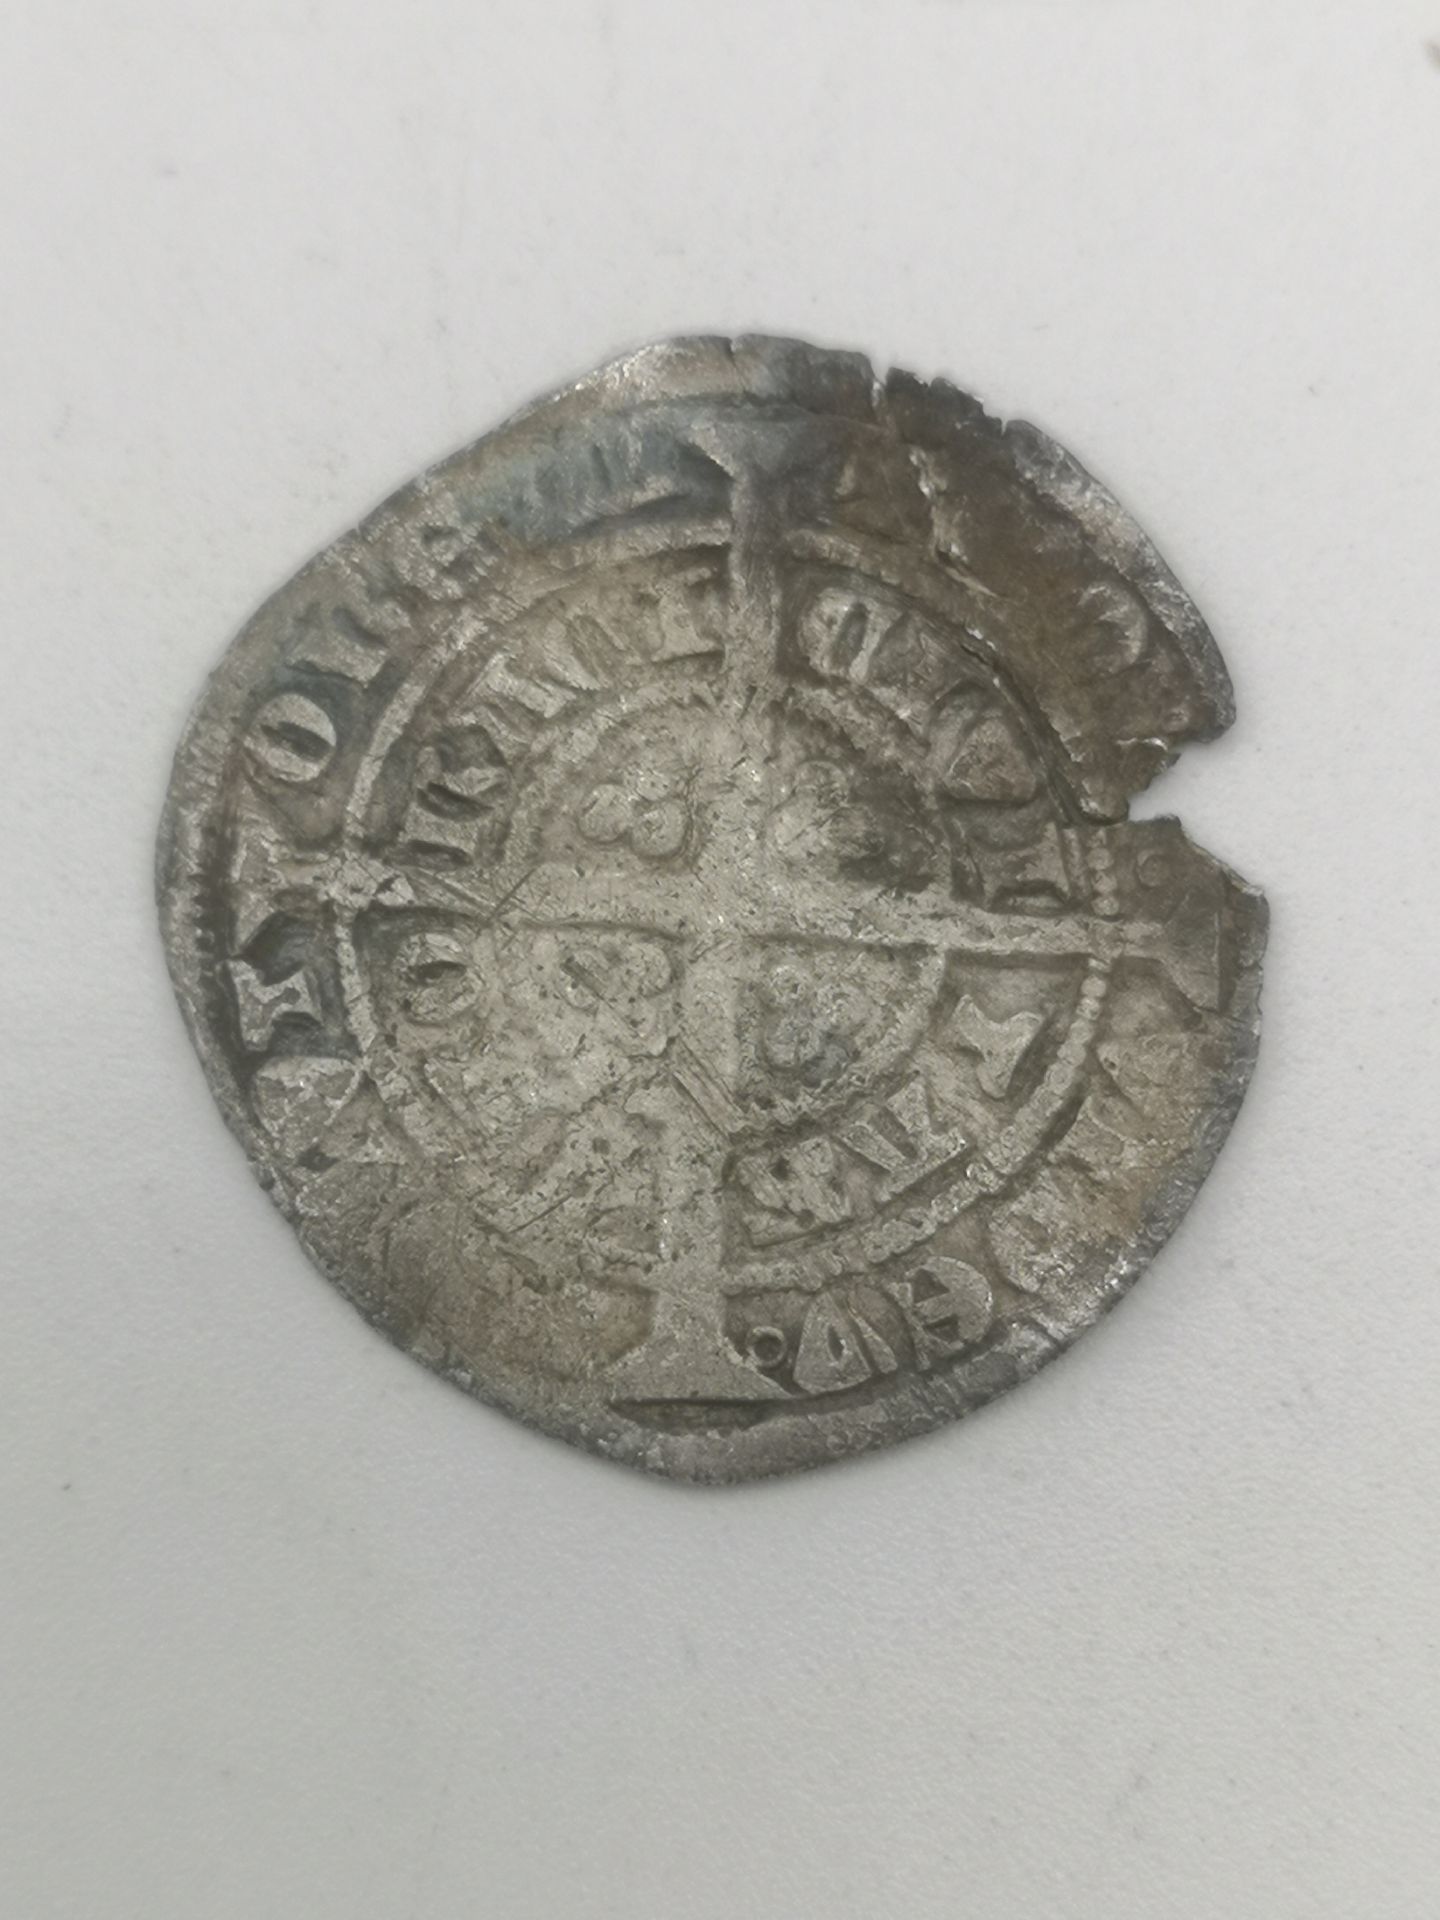 Edward III silver groat - Image 2 of 4